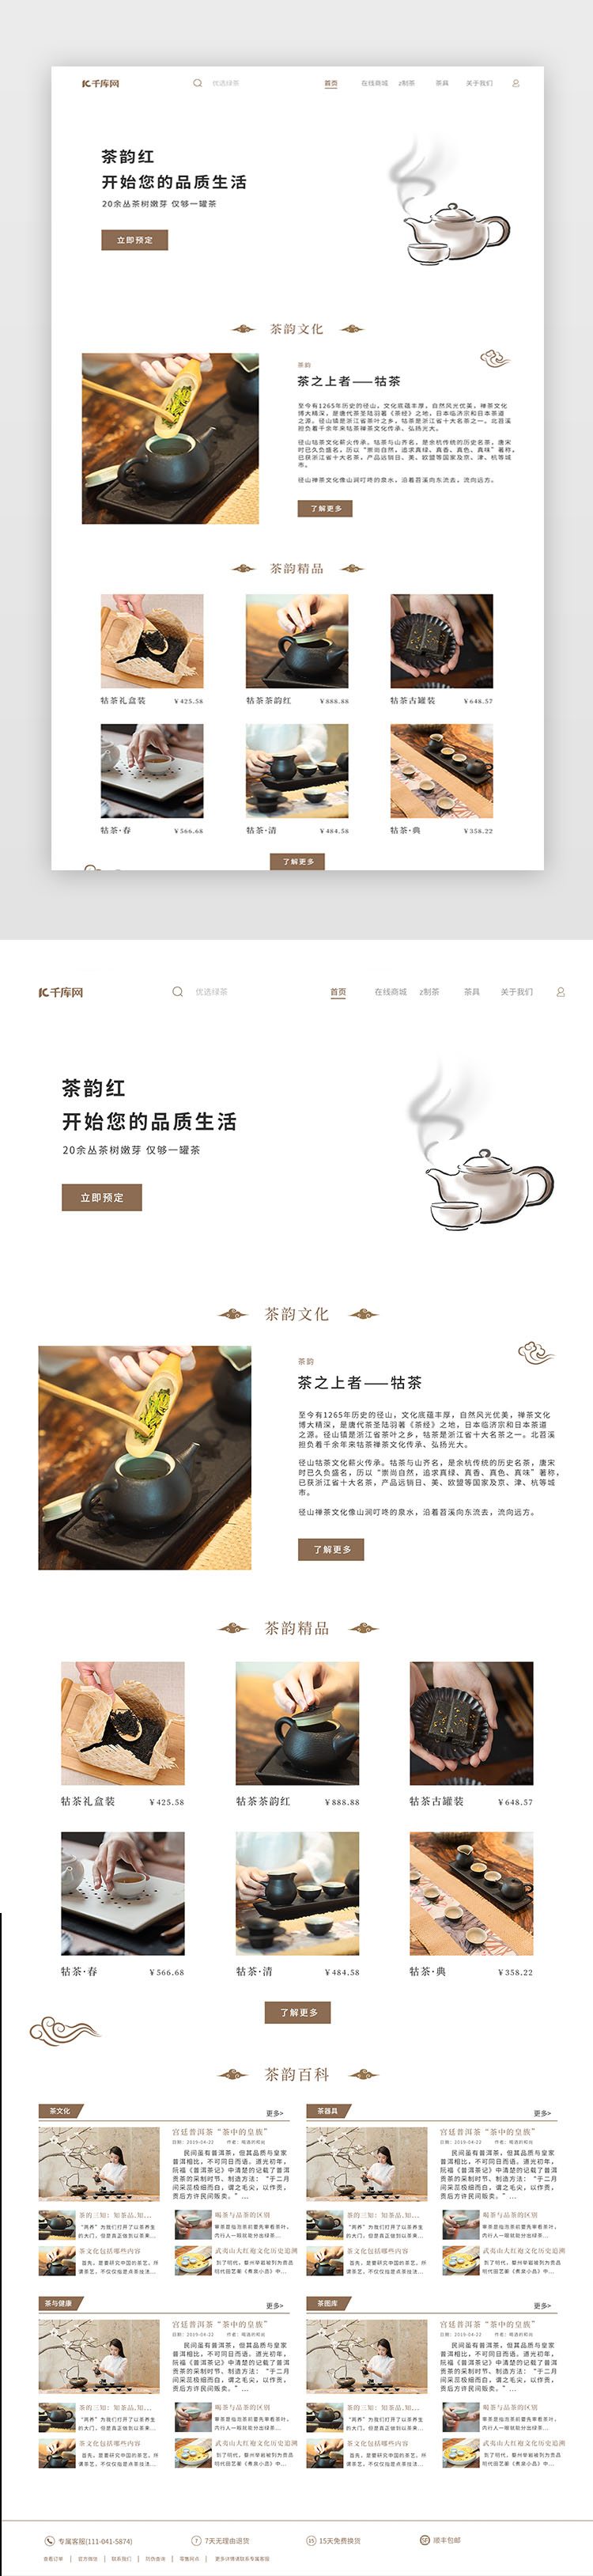 茶韵简约中国网站设计图片